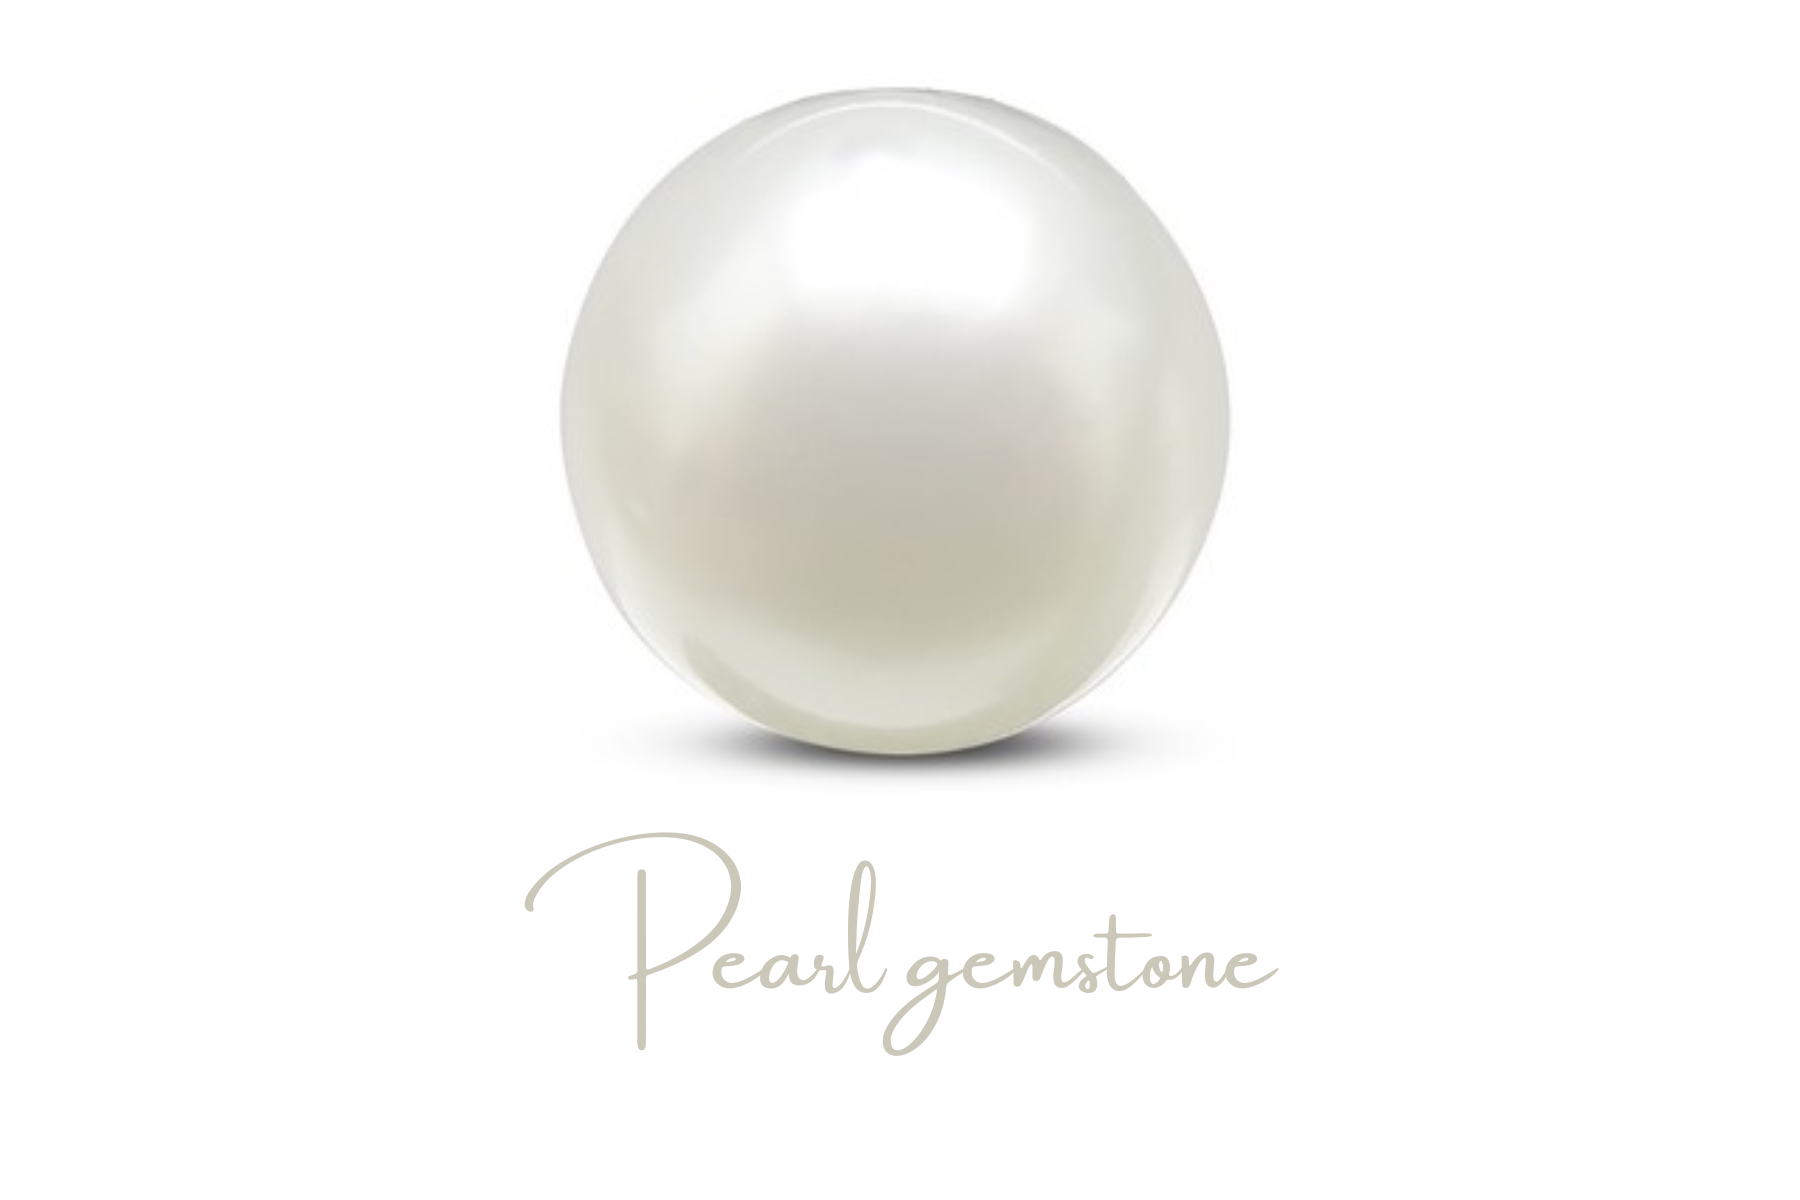 Round white silky pearl gemstone